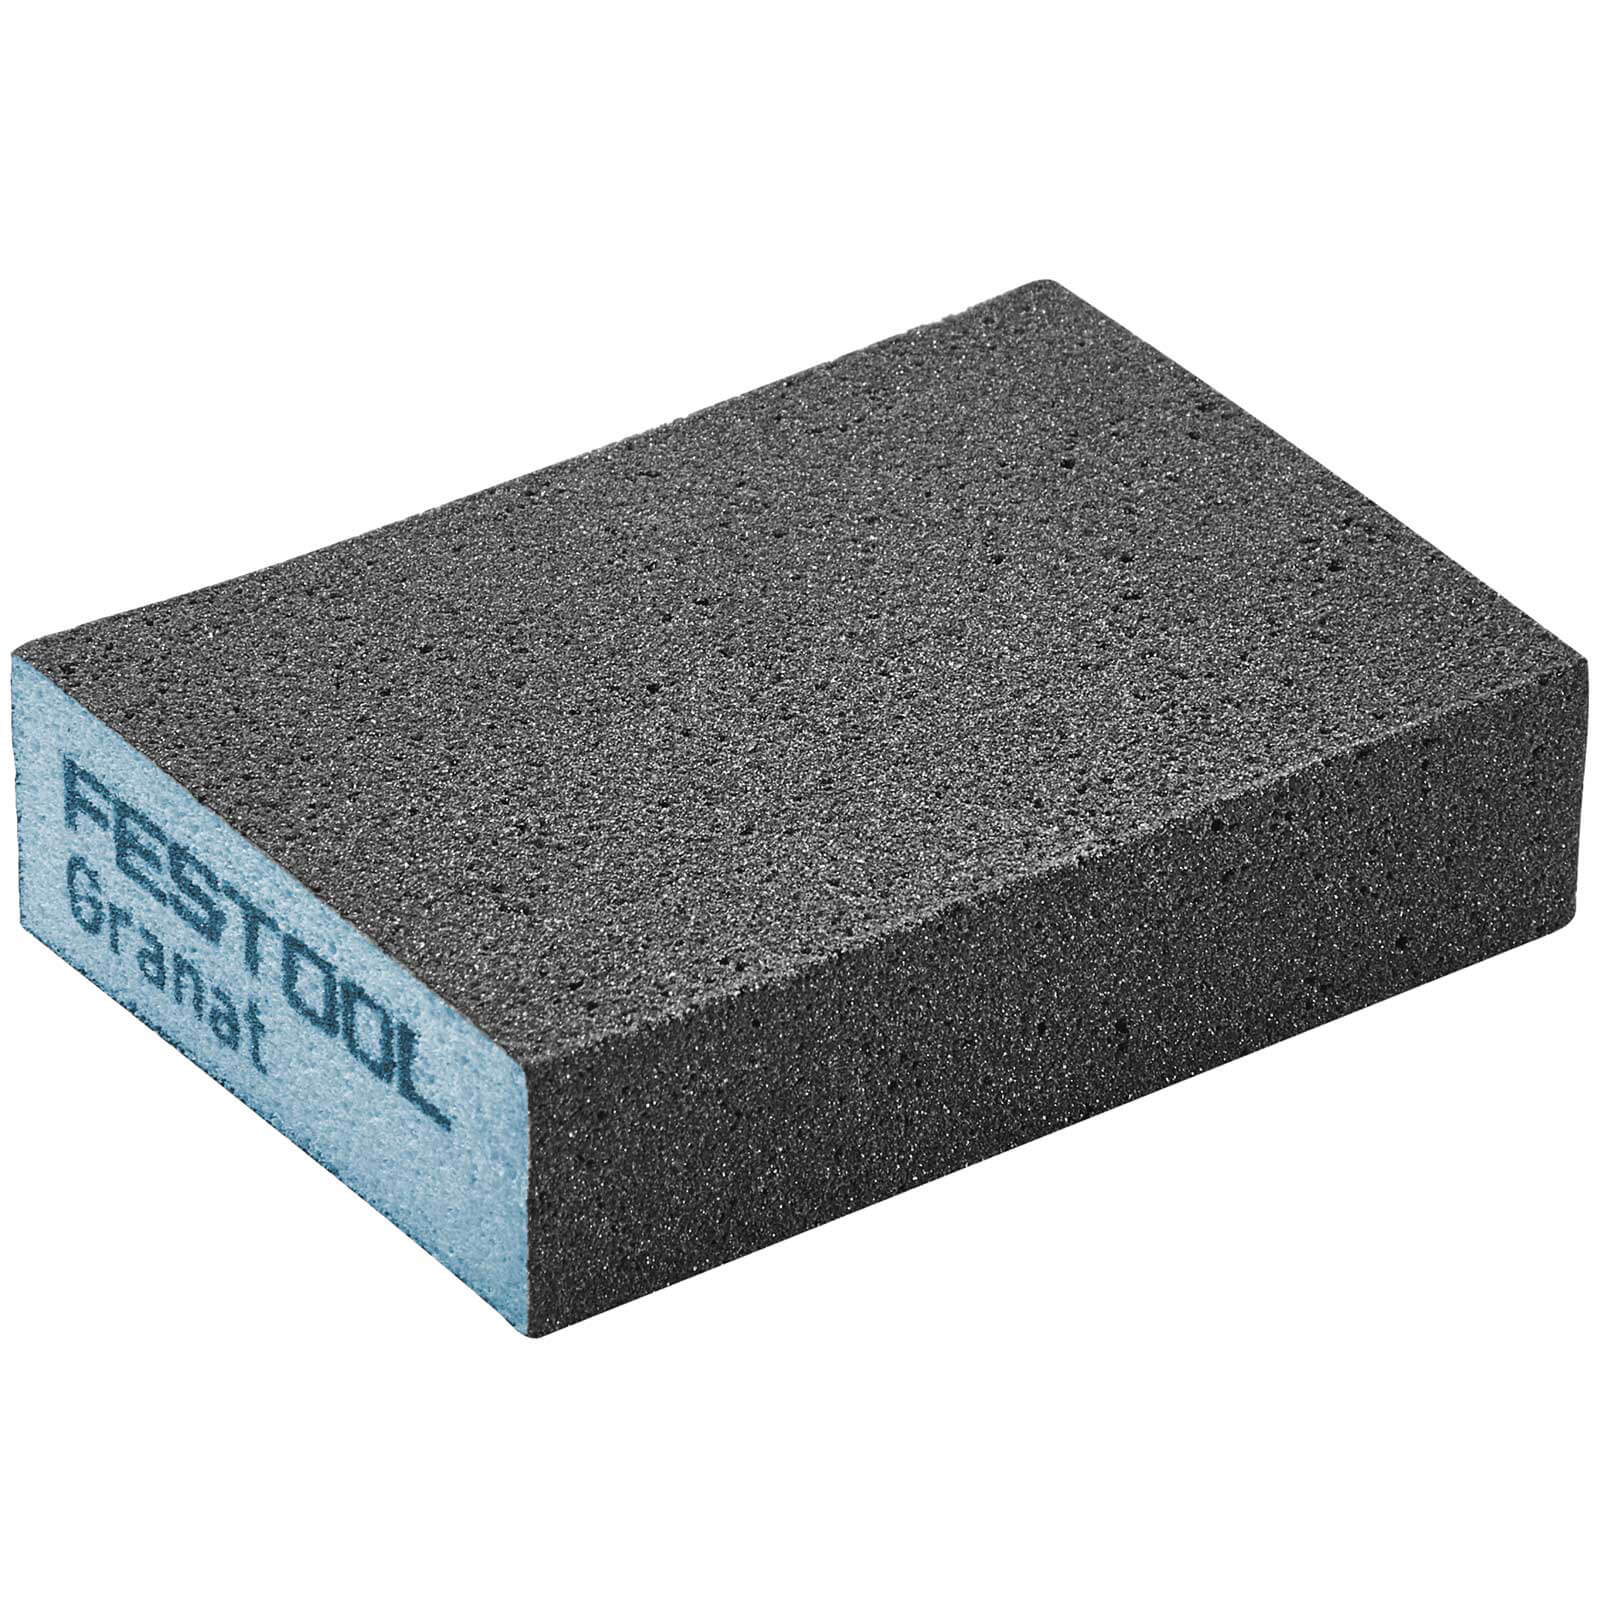 Photo of Festool Abrasive Hand Sanding Sponge Block 220g Pack Of 6